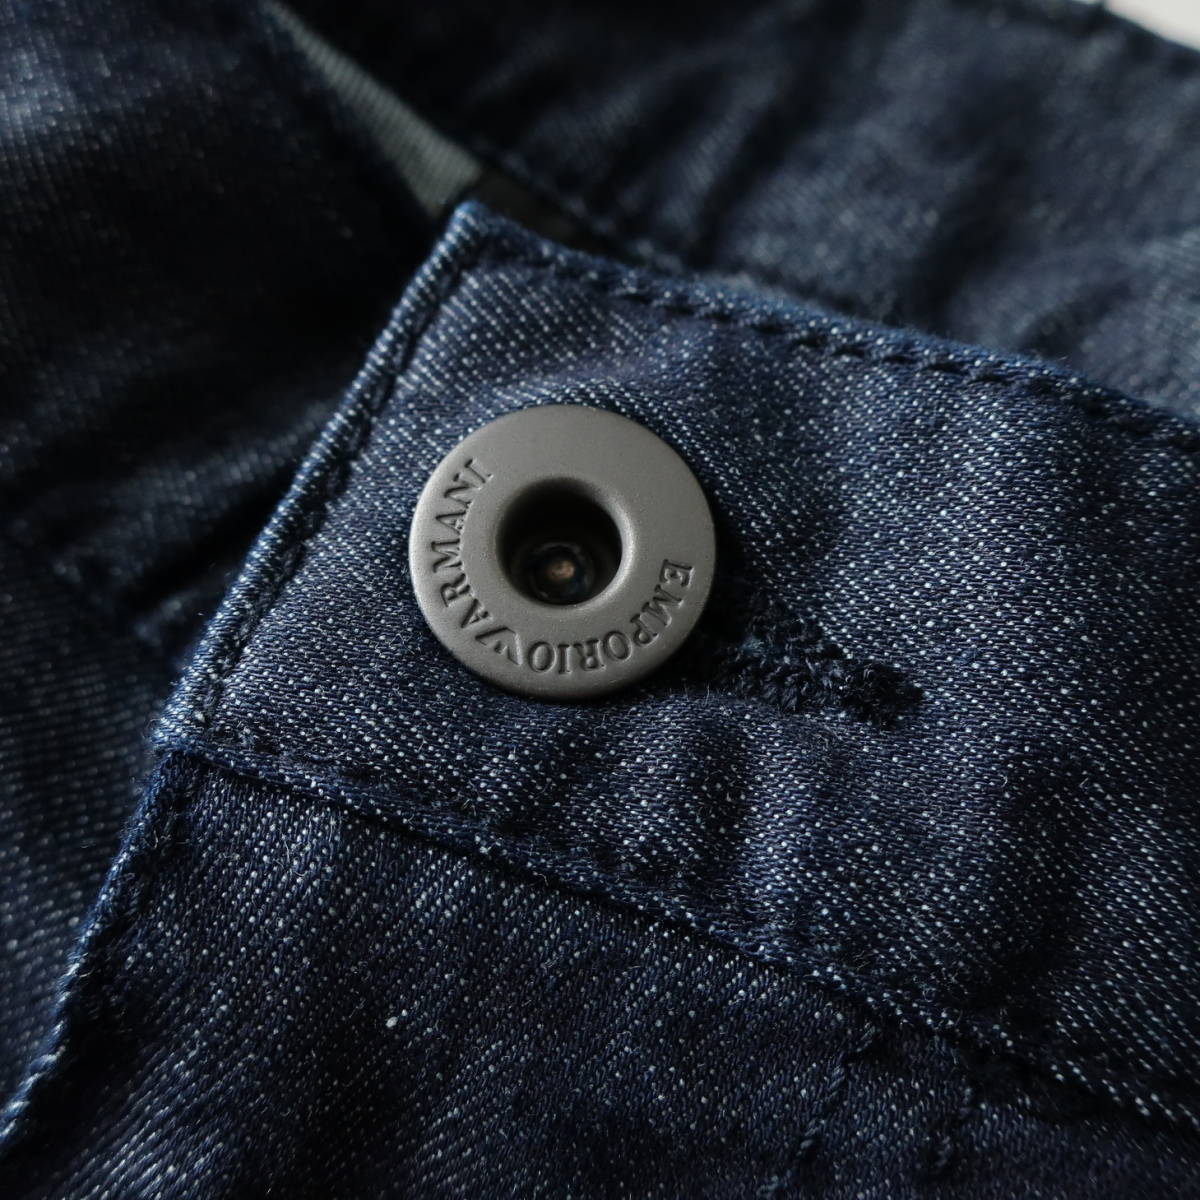  новый товар EMPORIO ARMANI Emporio Armani стрейч постоянный Fit распорка джинсы Denim индиго мужской W29 S размер 